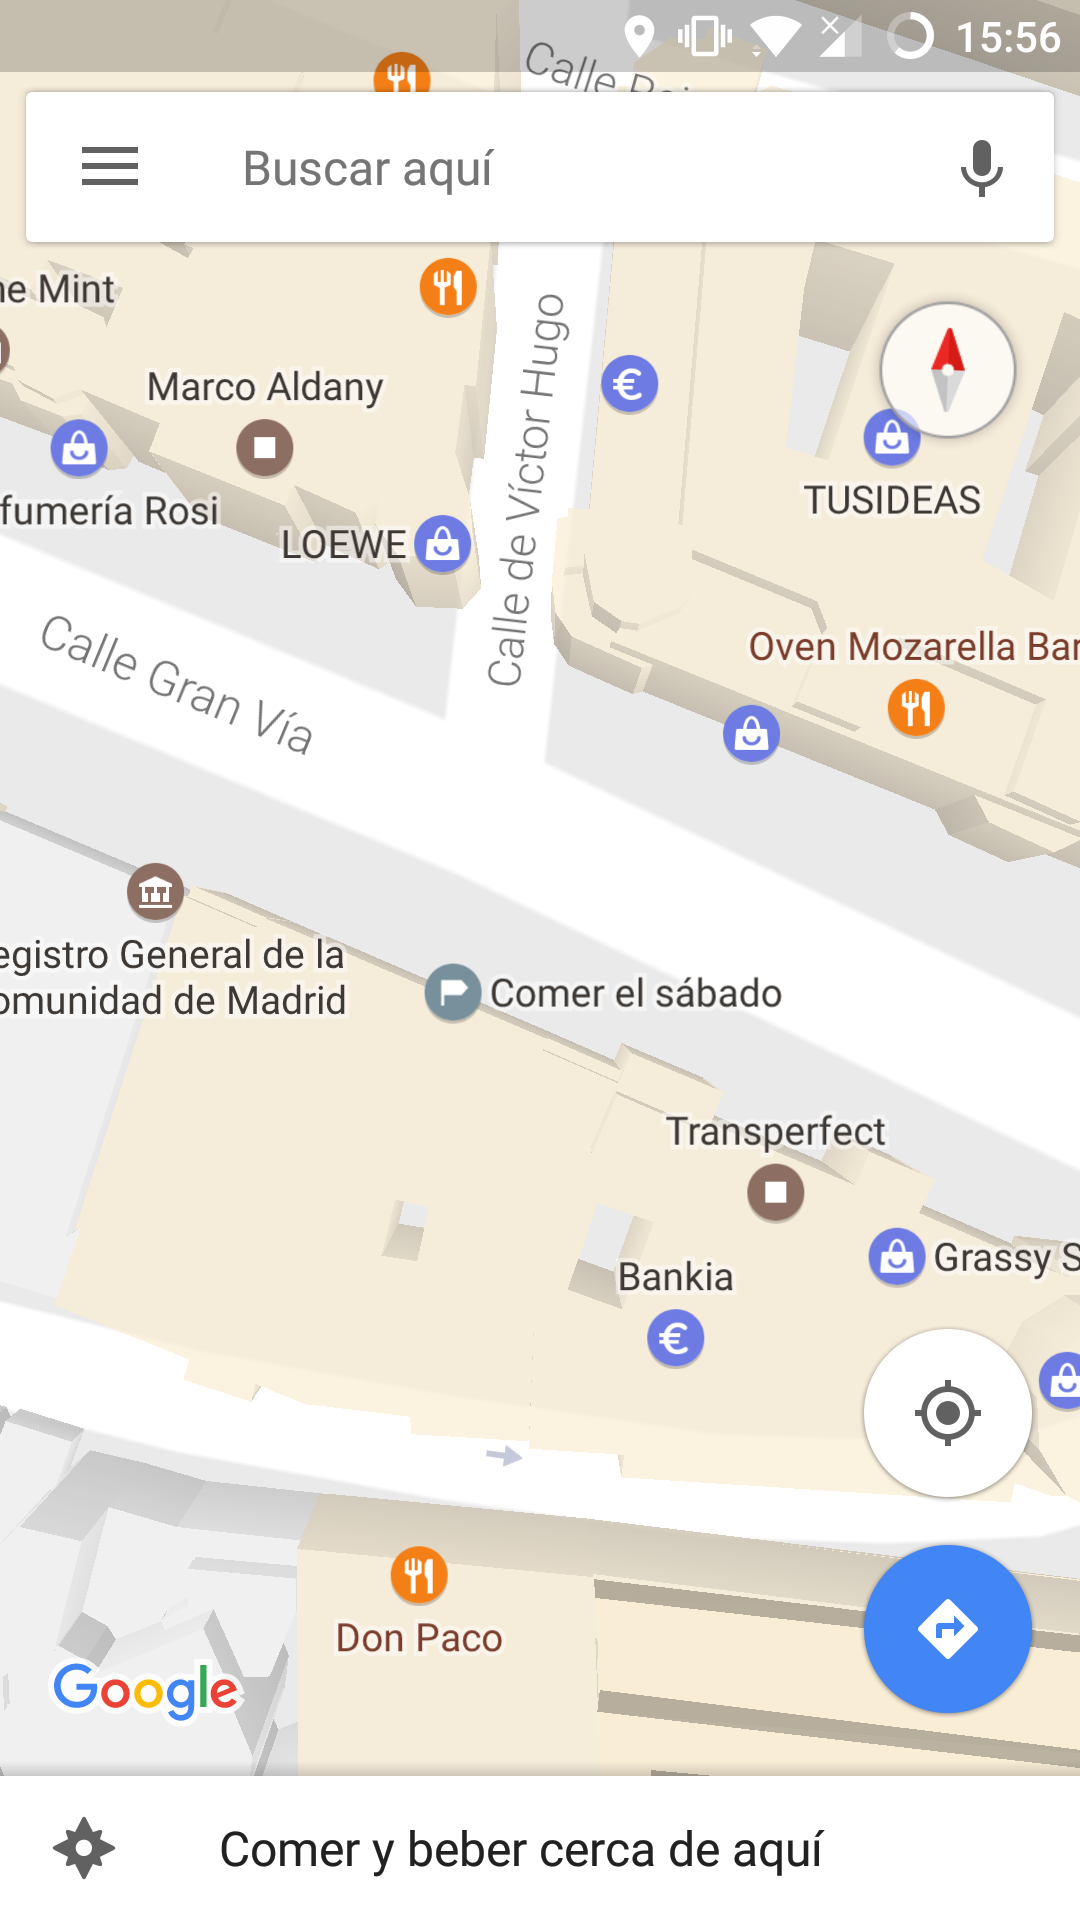 Lugar etiquetado en la aplicación de Google Maps